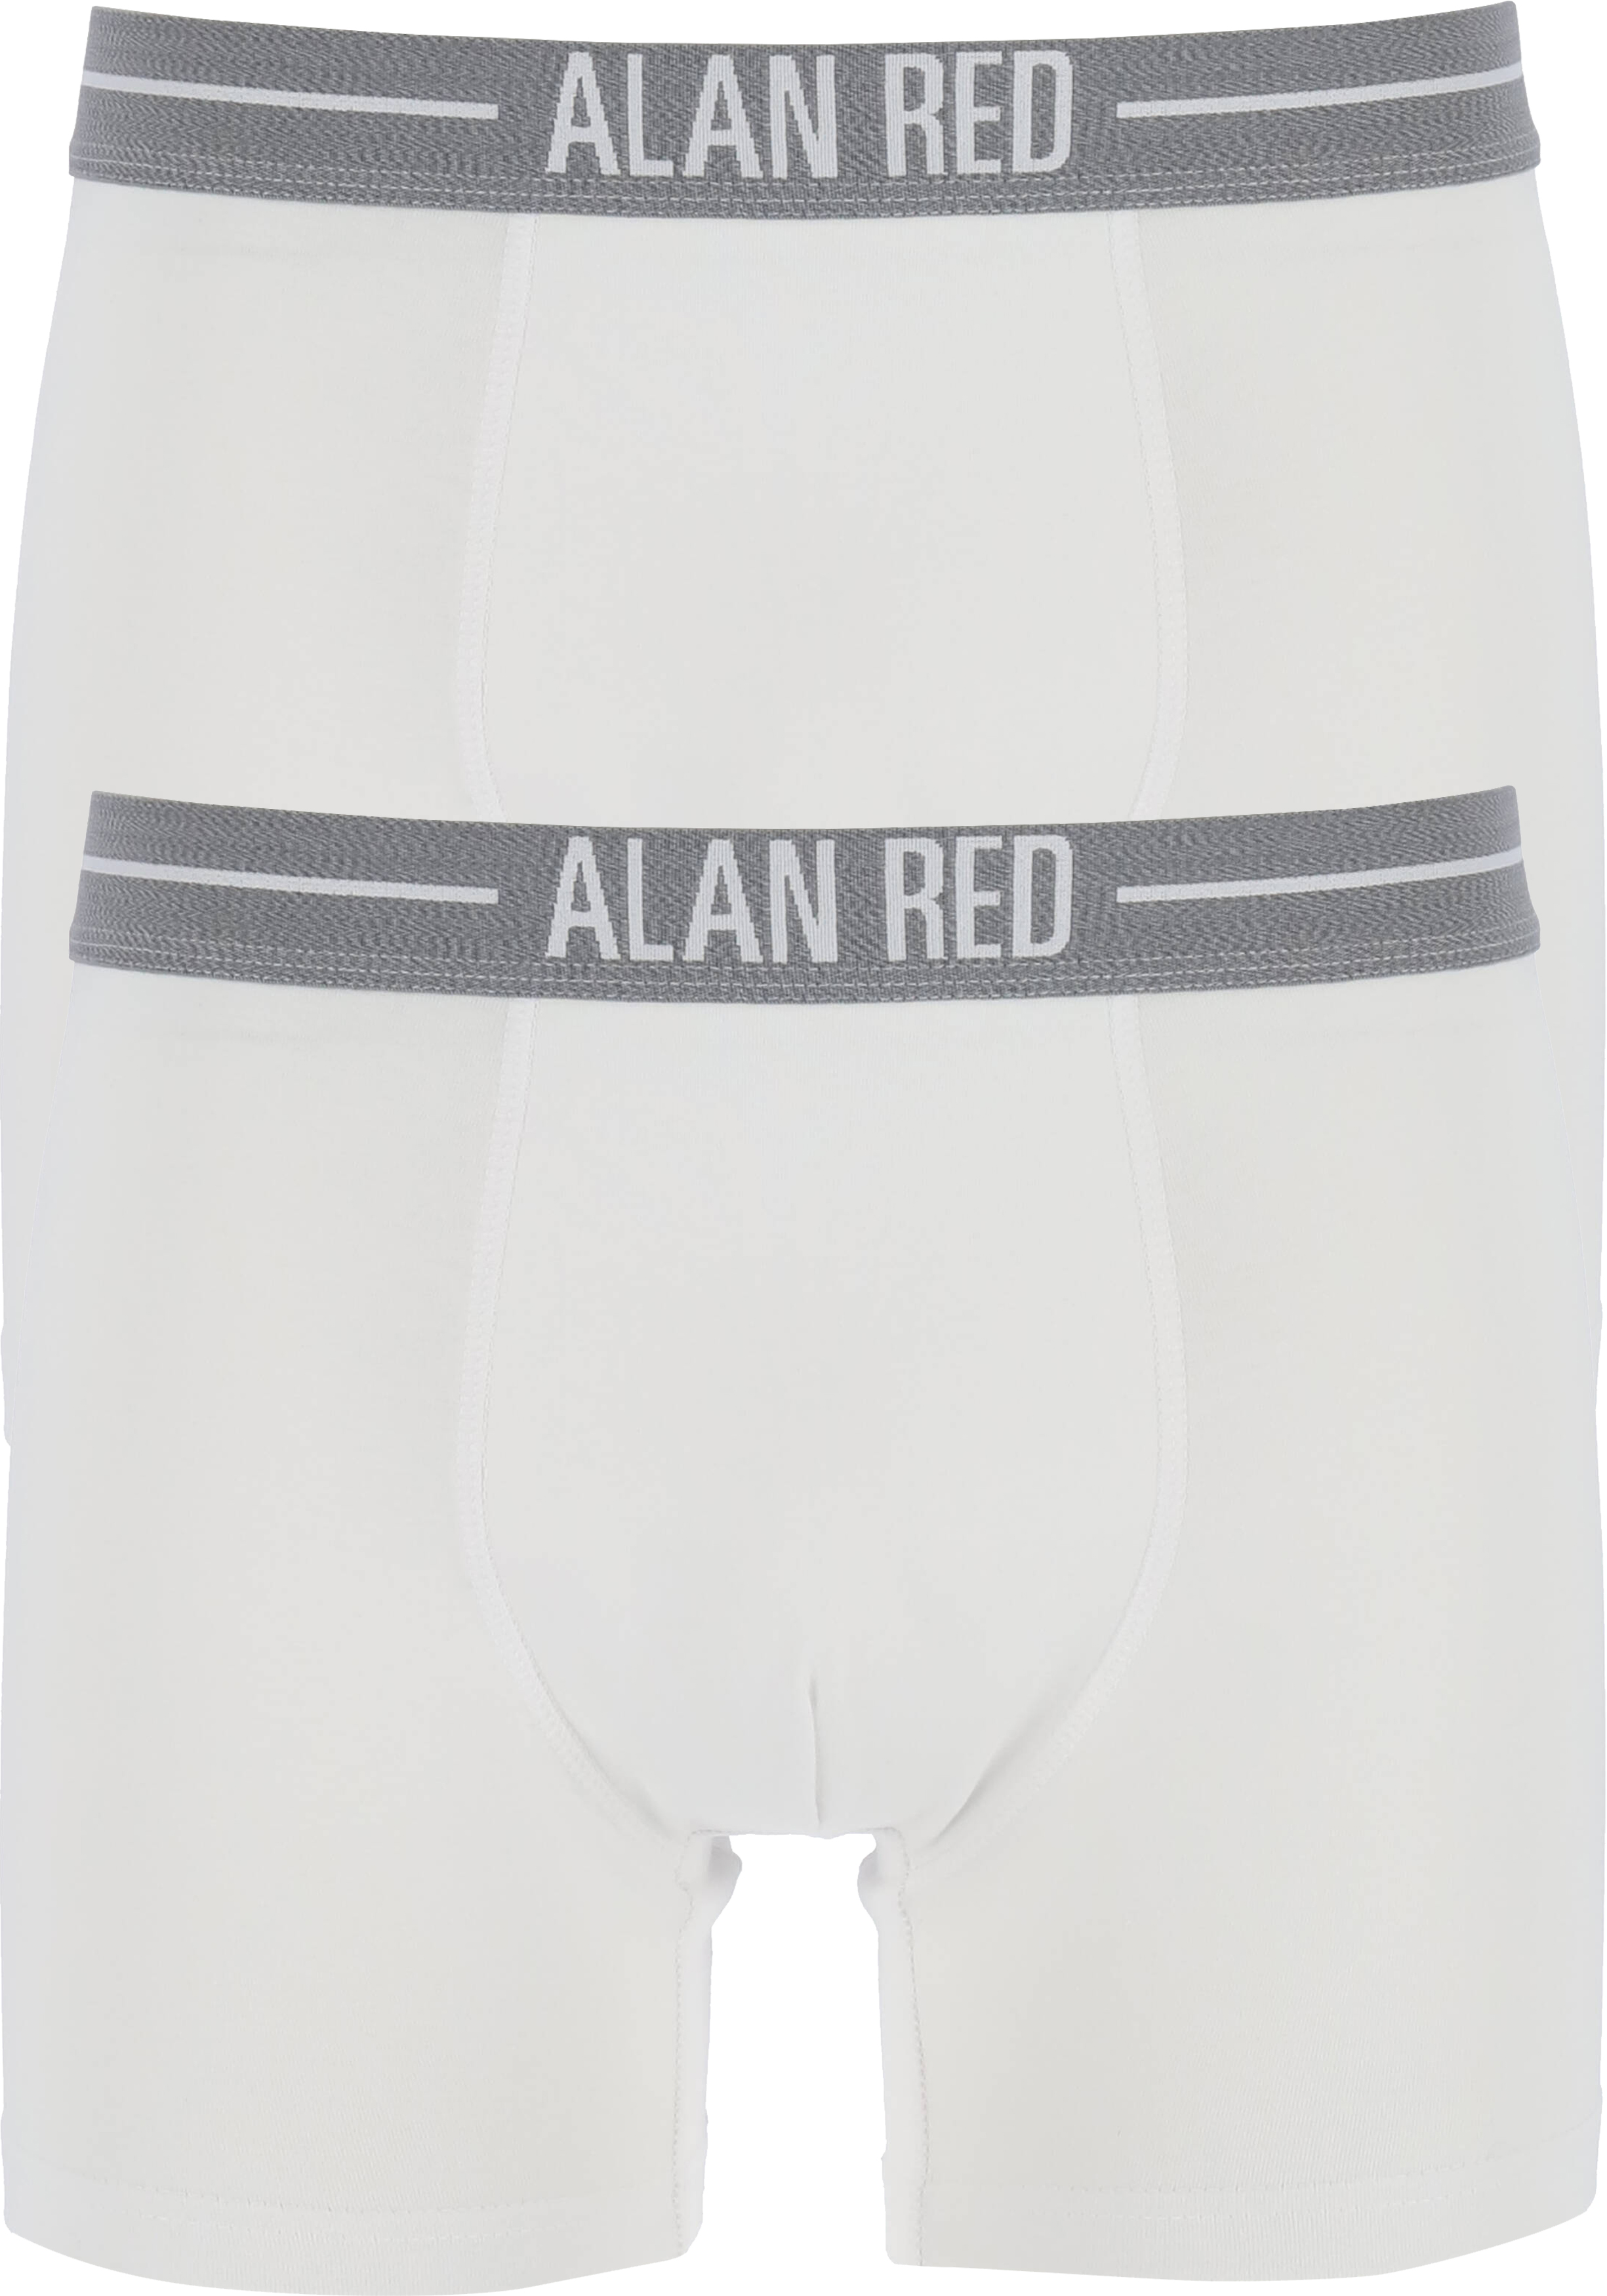 ALAN RED boxershorts (2-pack), wit